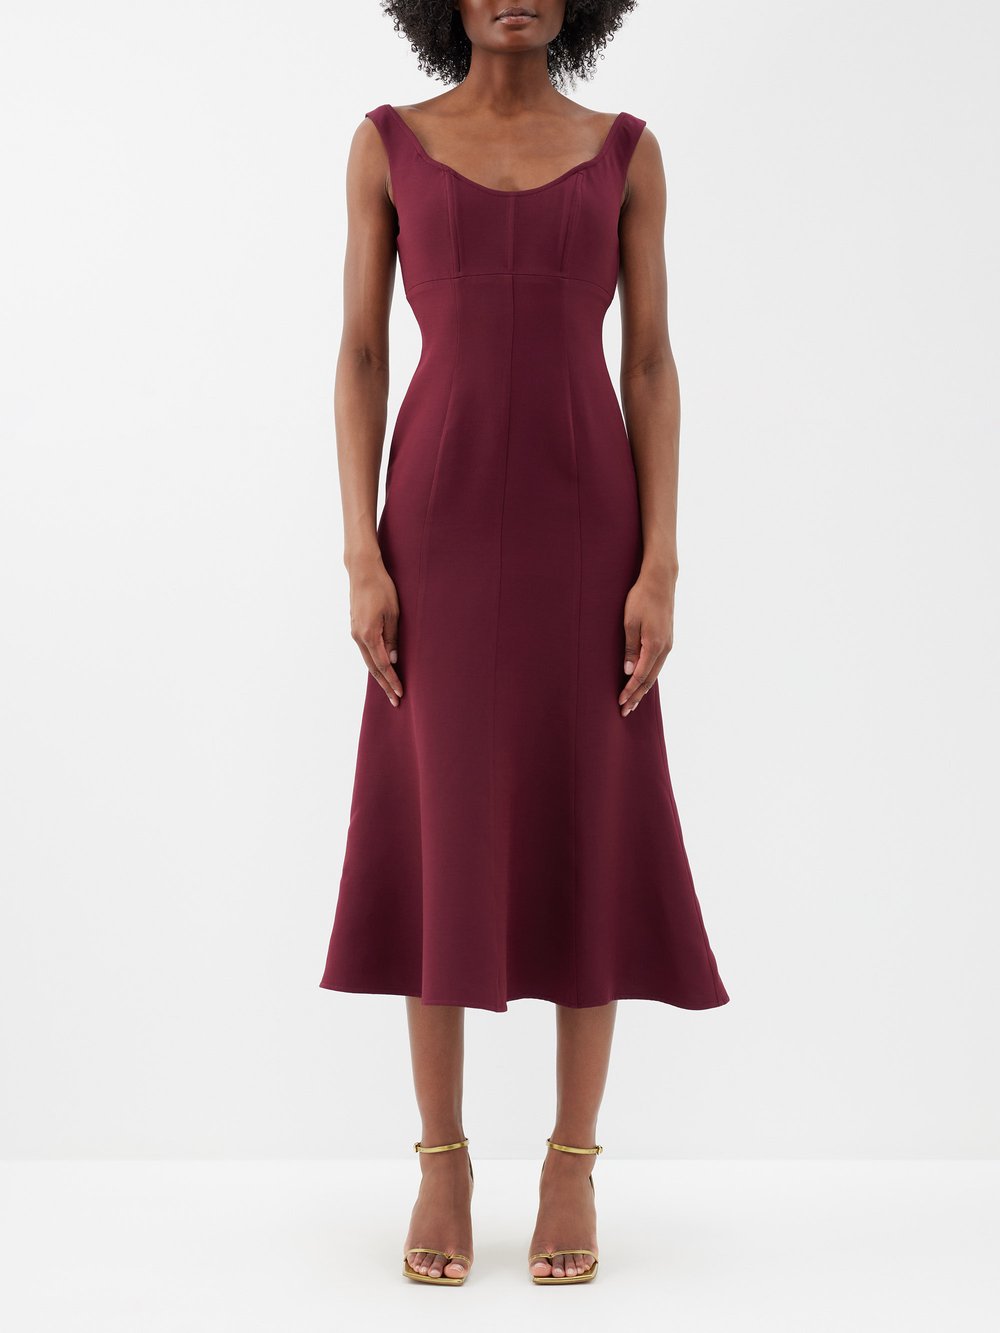 Приталенное платье миди из смесовой шерсти с открытыми плечами Roland Mouret, бургундия платье бордовое 44 размер новое